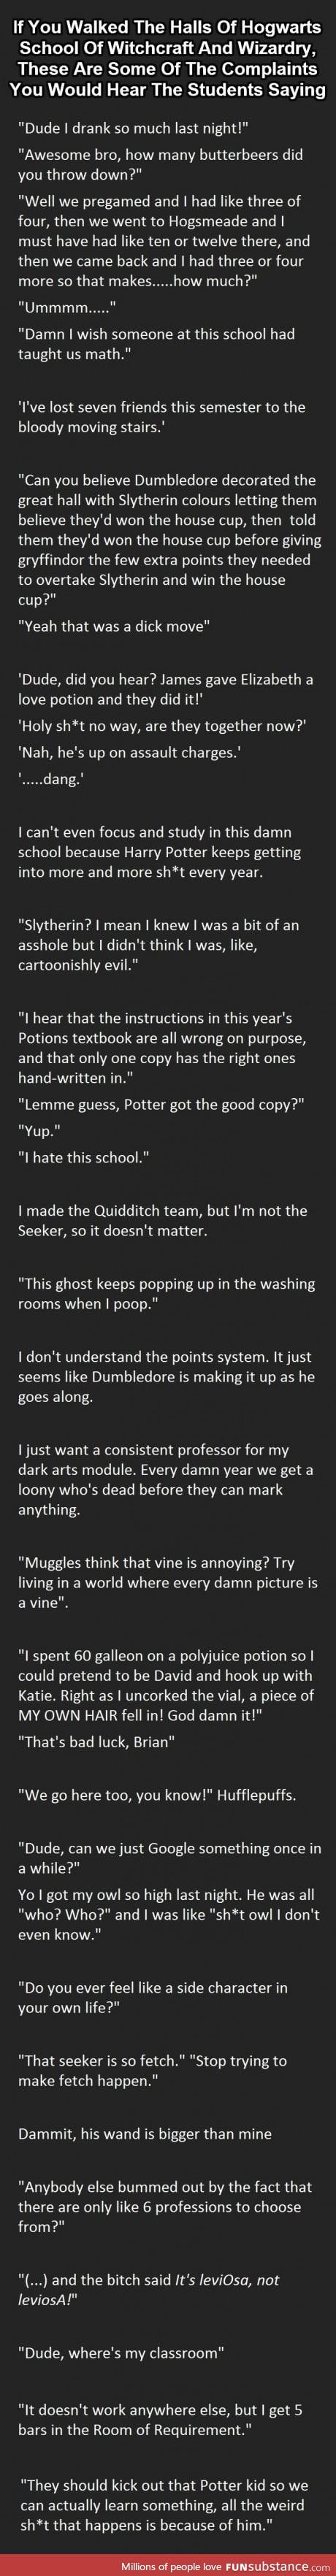 Things you'd hear at Hogwarts